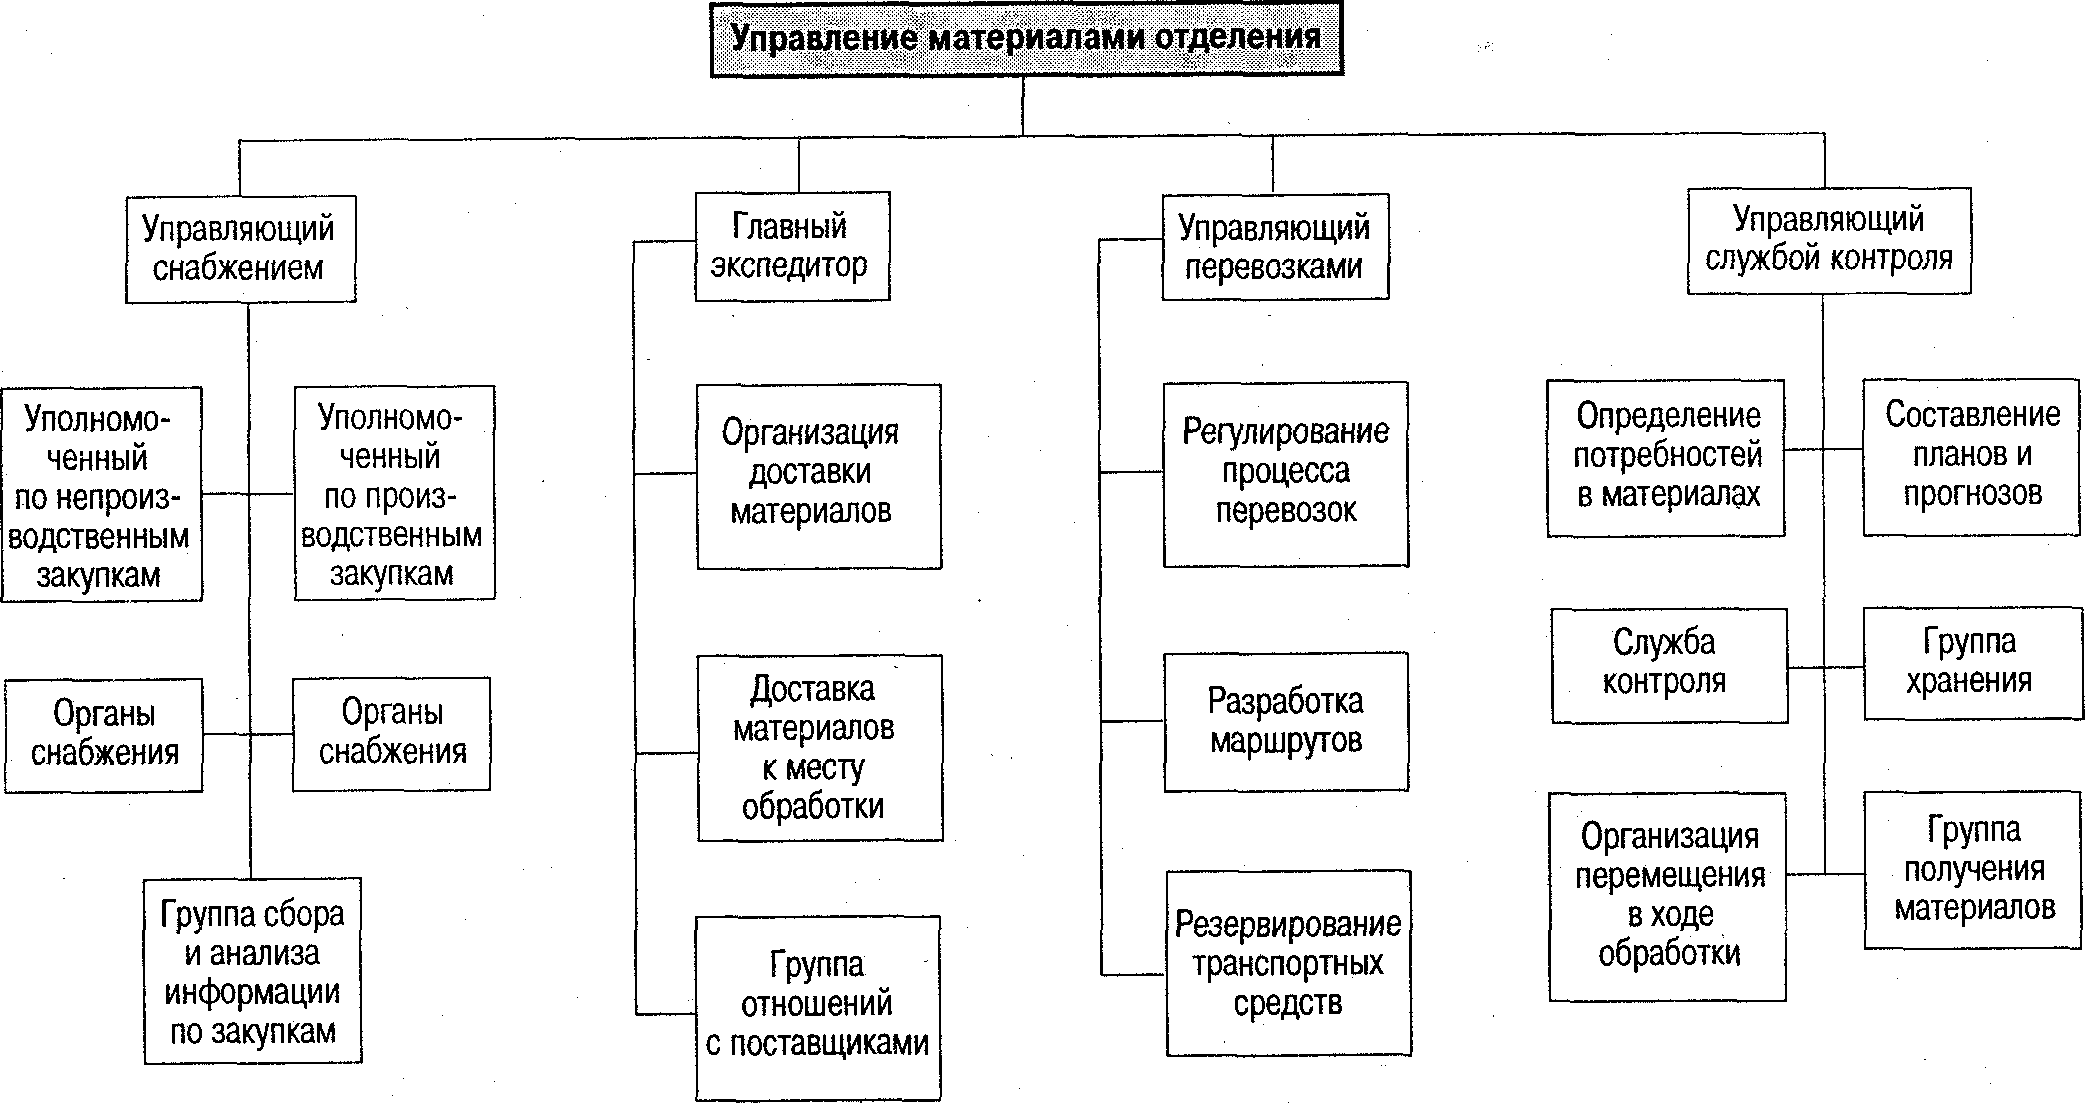 Структурная схема отдела снабжения